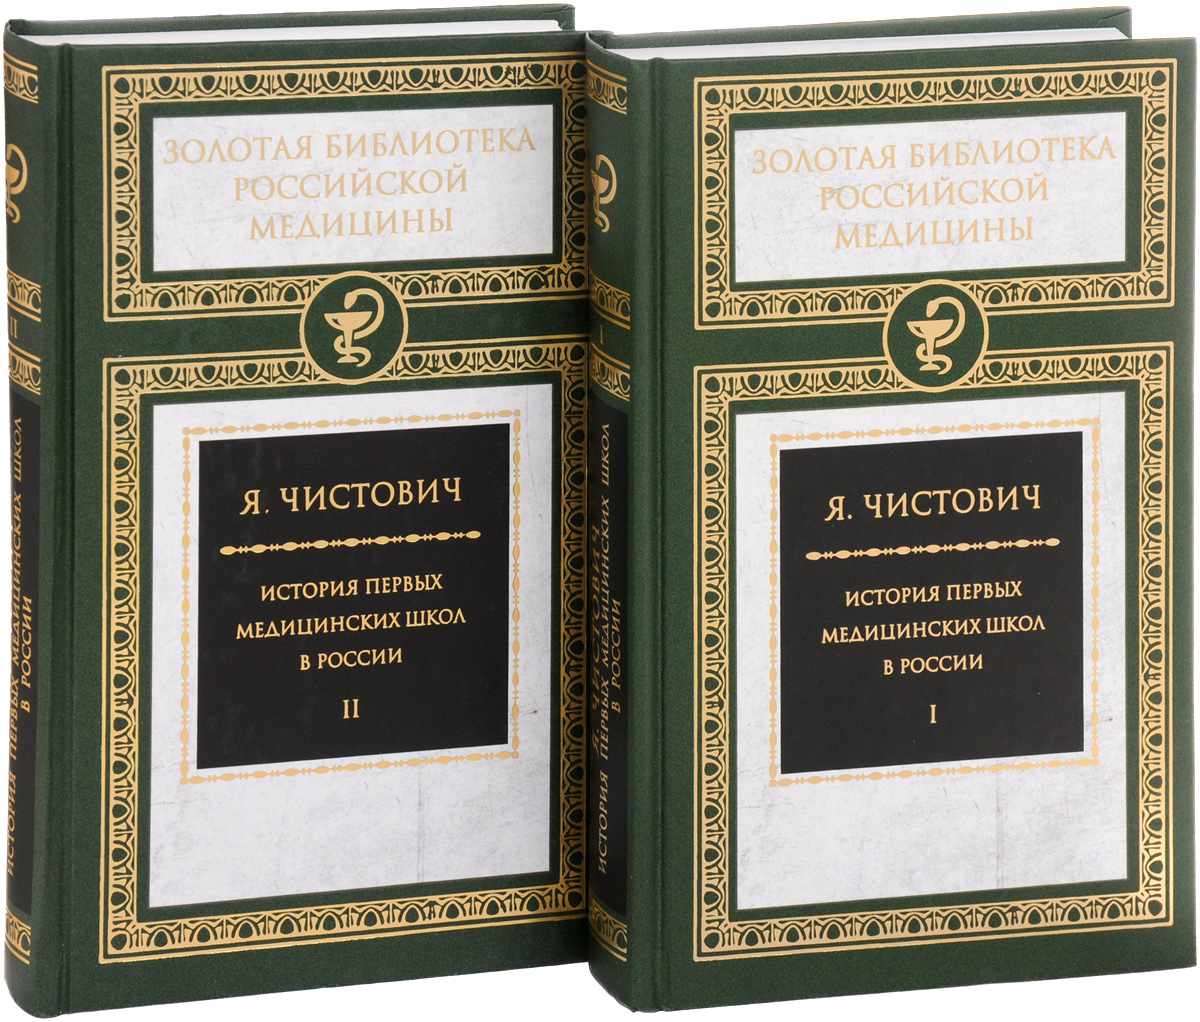 История первых медицинских школ. В 2 томах (комплект)